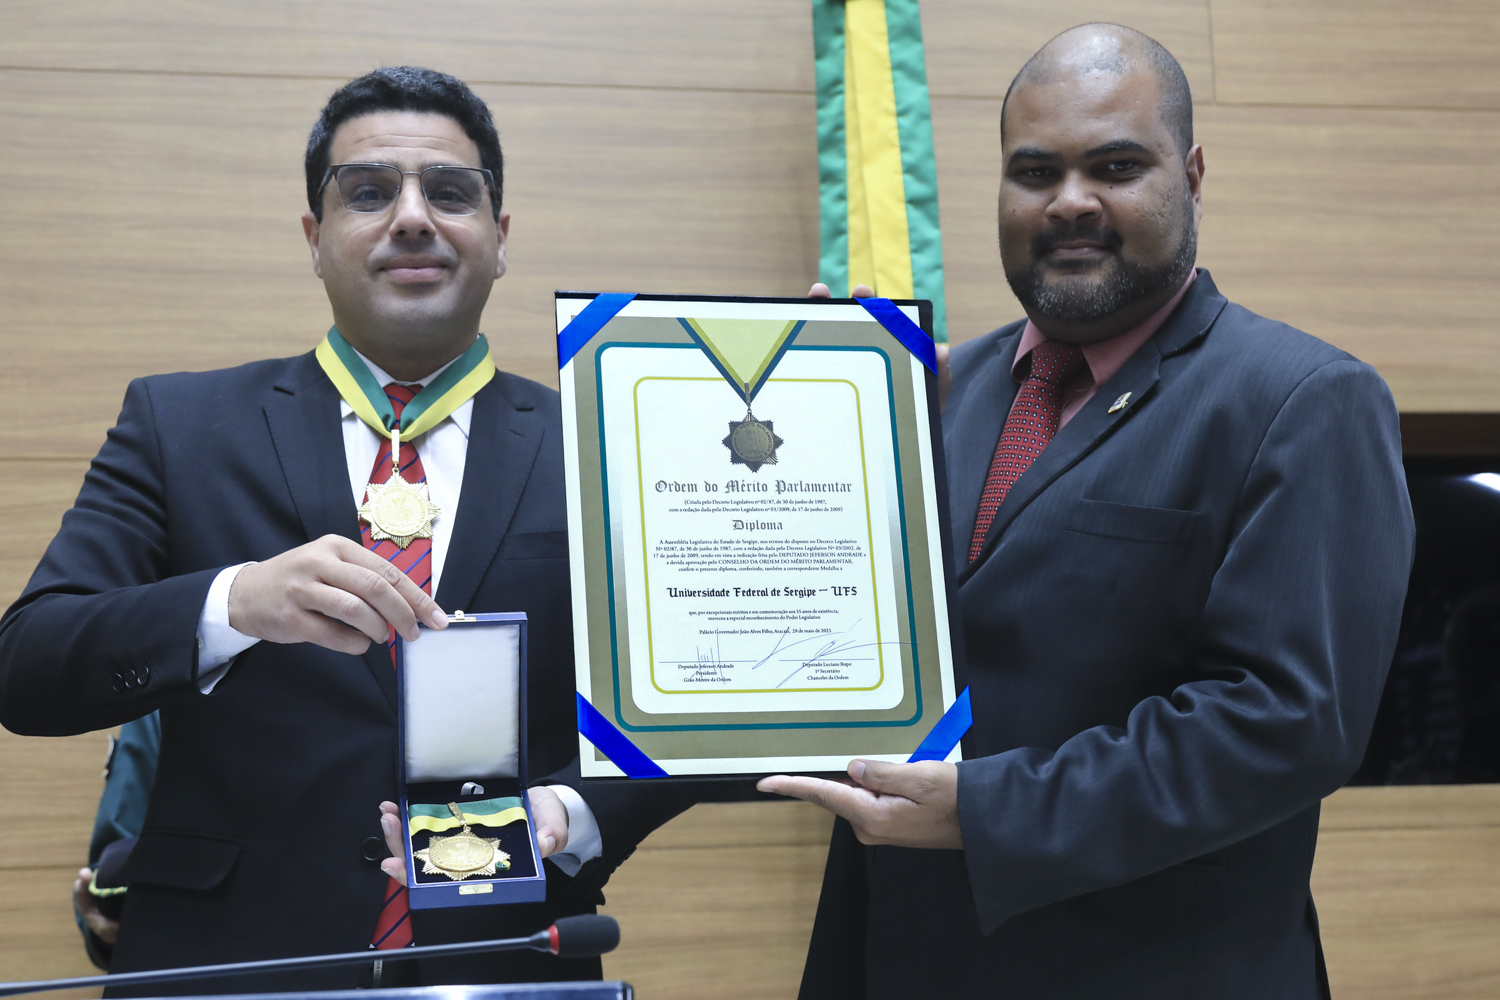 UFS recebeu a Medalha da Ordem do Mérito Parlamentar, outorgada pela Alese, por indicação do deputado Jeferson Andrade, presidente da Casa. (Fotos: Adilson Andrade / Ascom UFS)